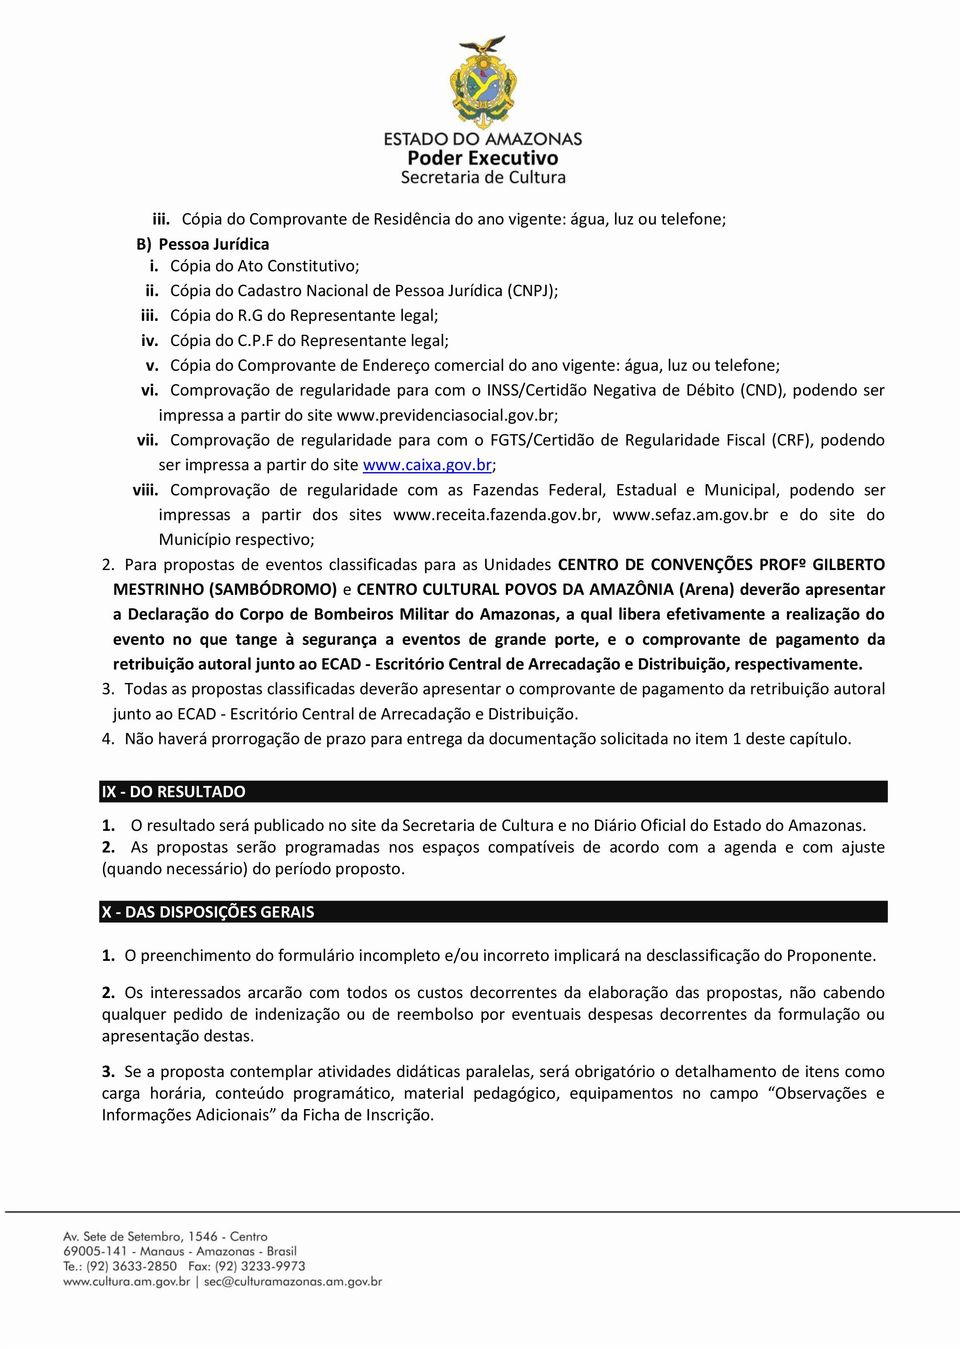 Comprovação de regularidade para com o INSS/Certidão Negativa de Débito (CND), podendo ser impressa a partir do site www.previdenciasocial.gov.br; vii.